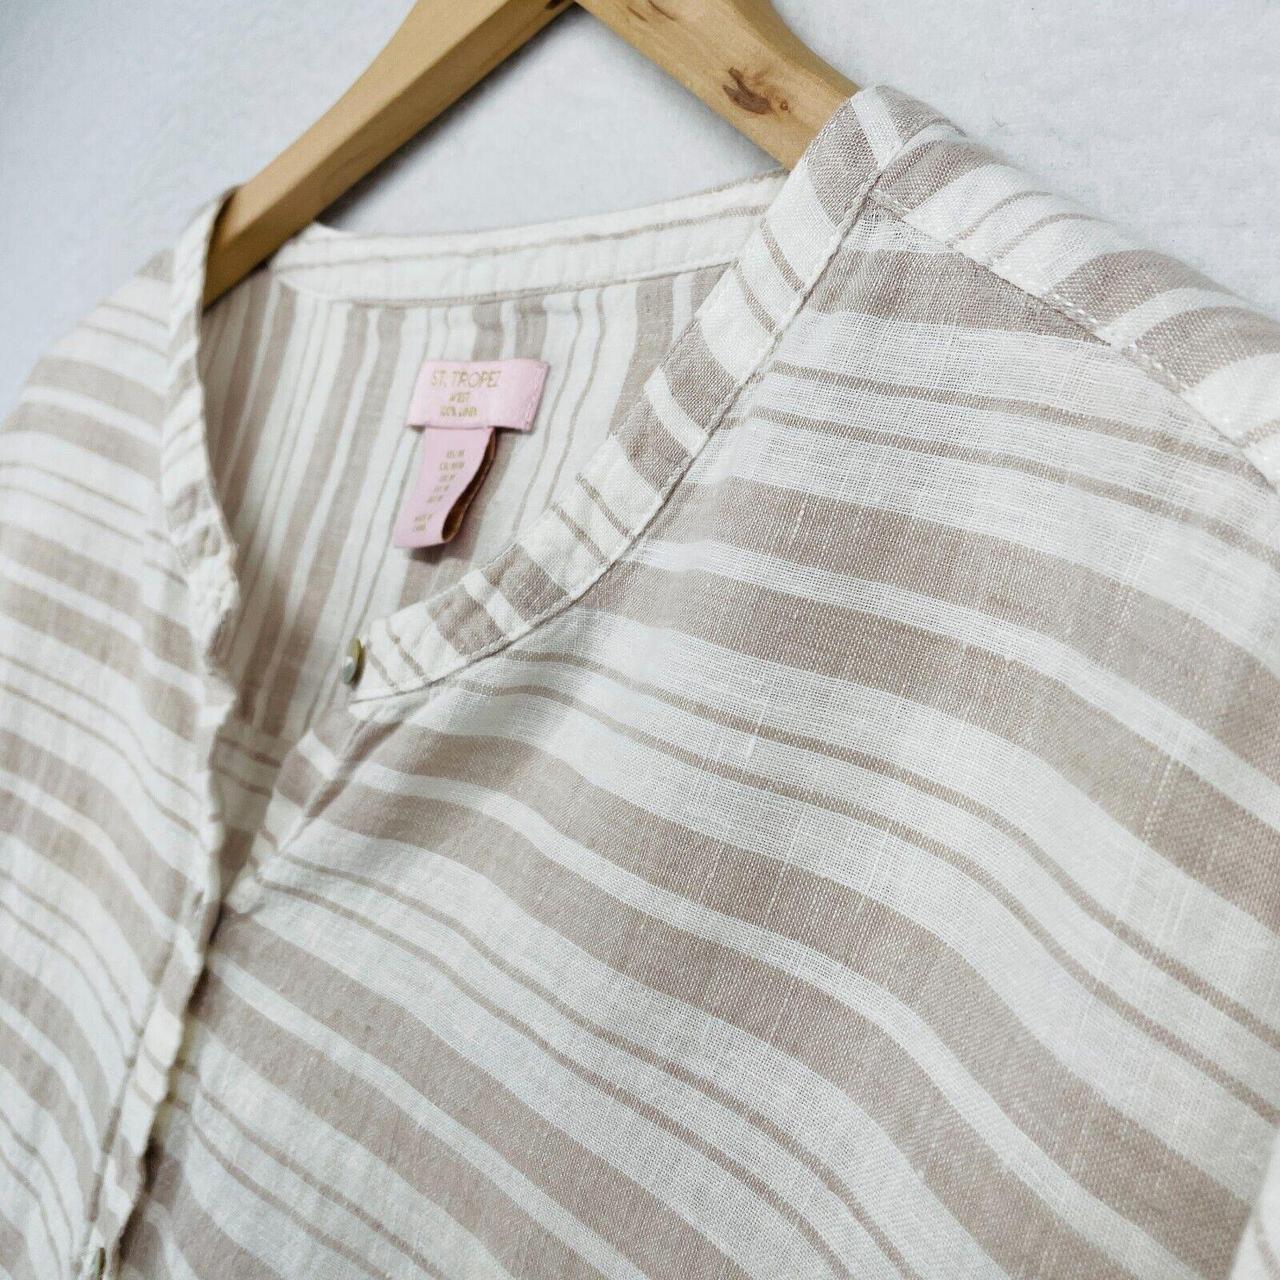 Product Image 2 - ST. TROPEZ WEST Linen Striped